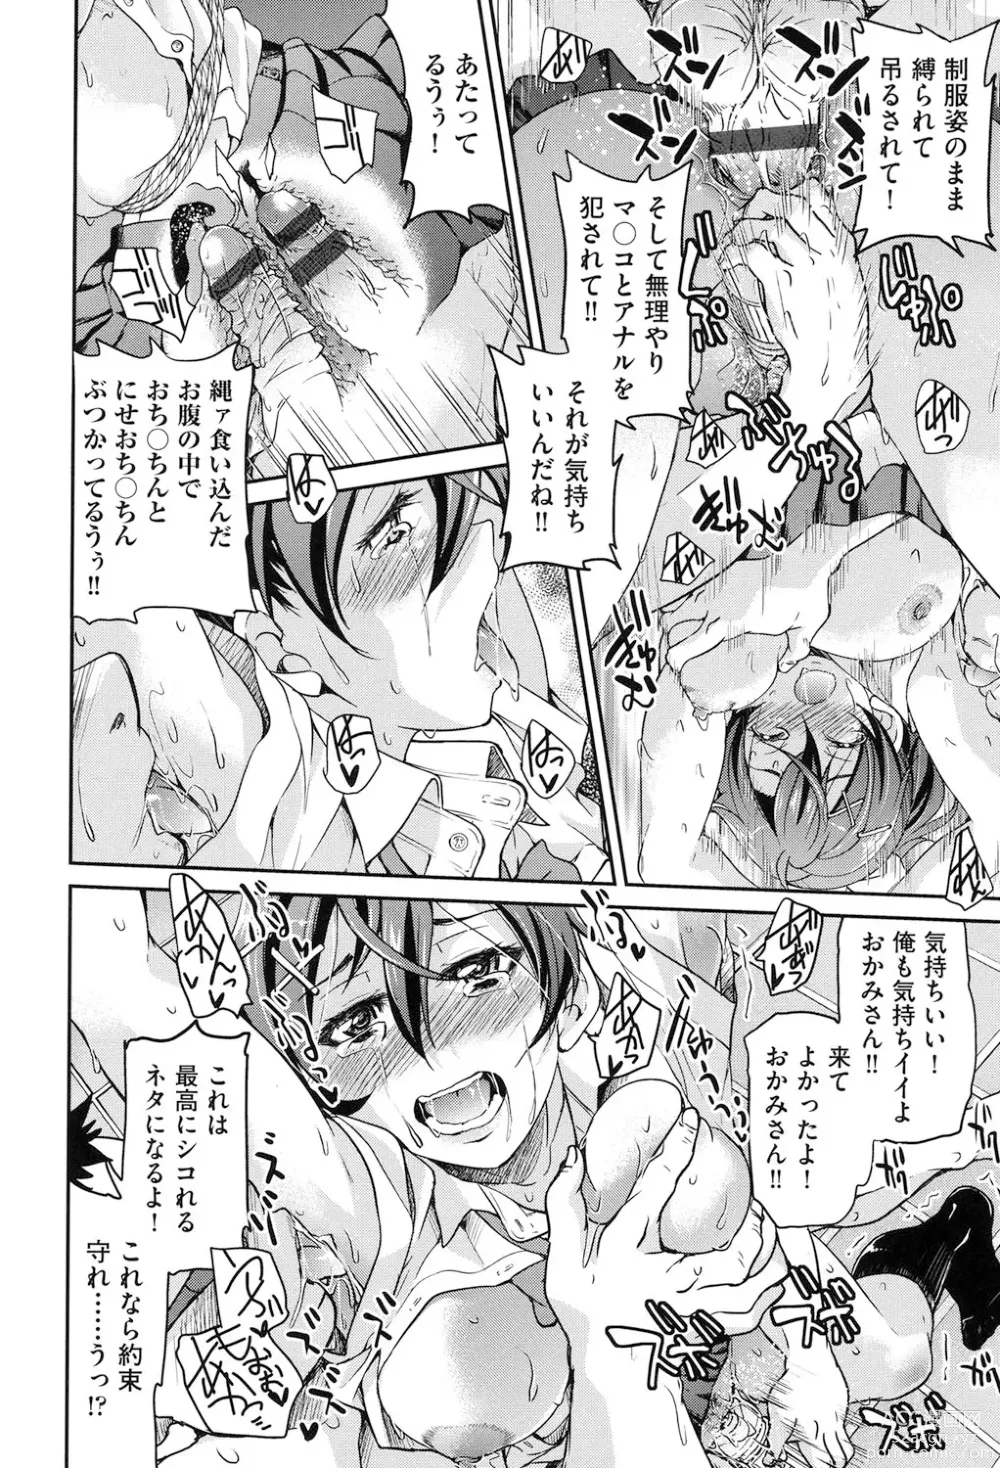 Page 29 of manga Seifuku JK